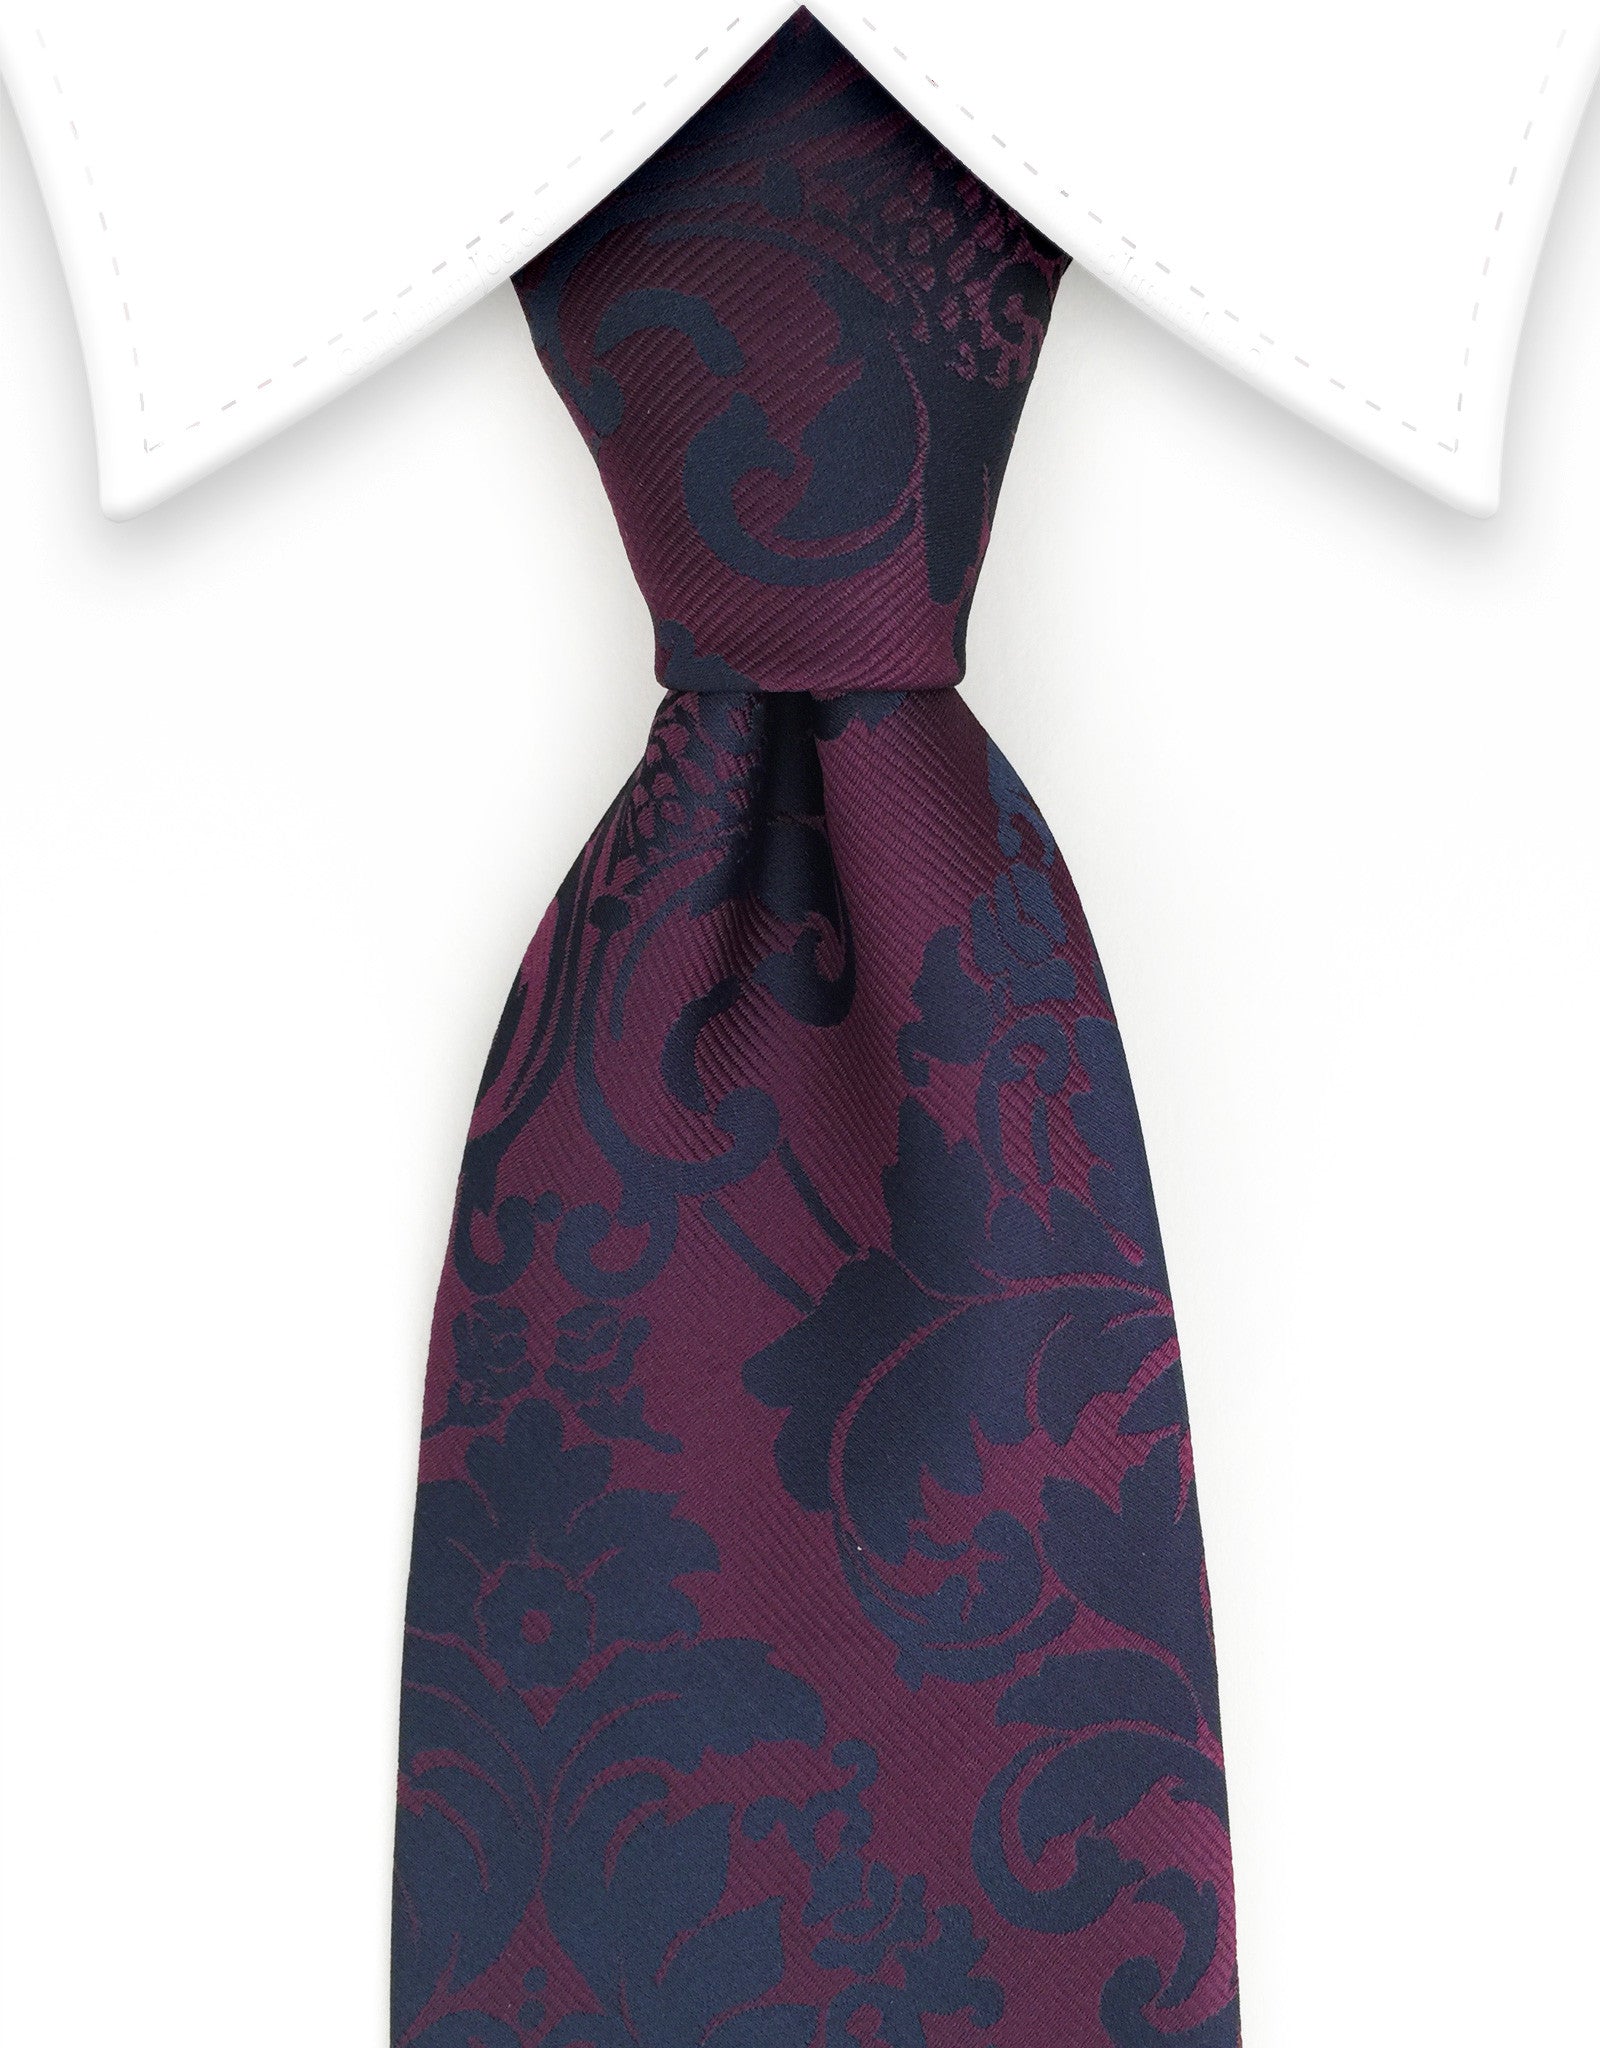 Merlot & black floral tie